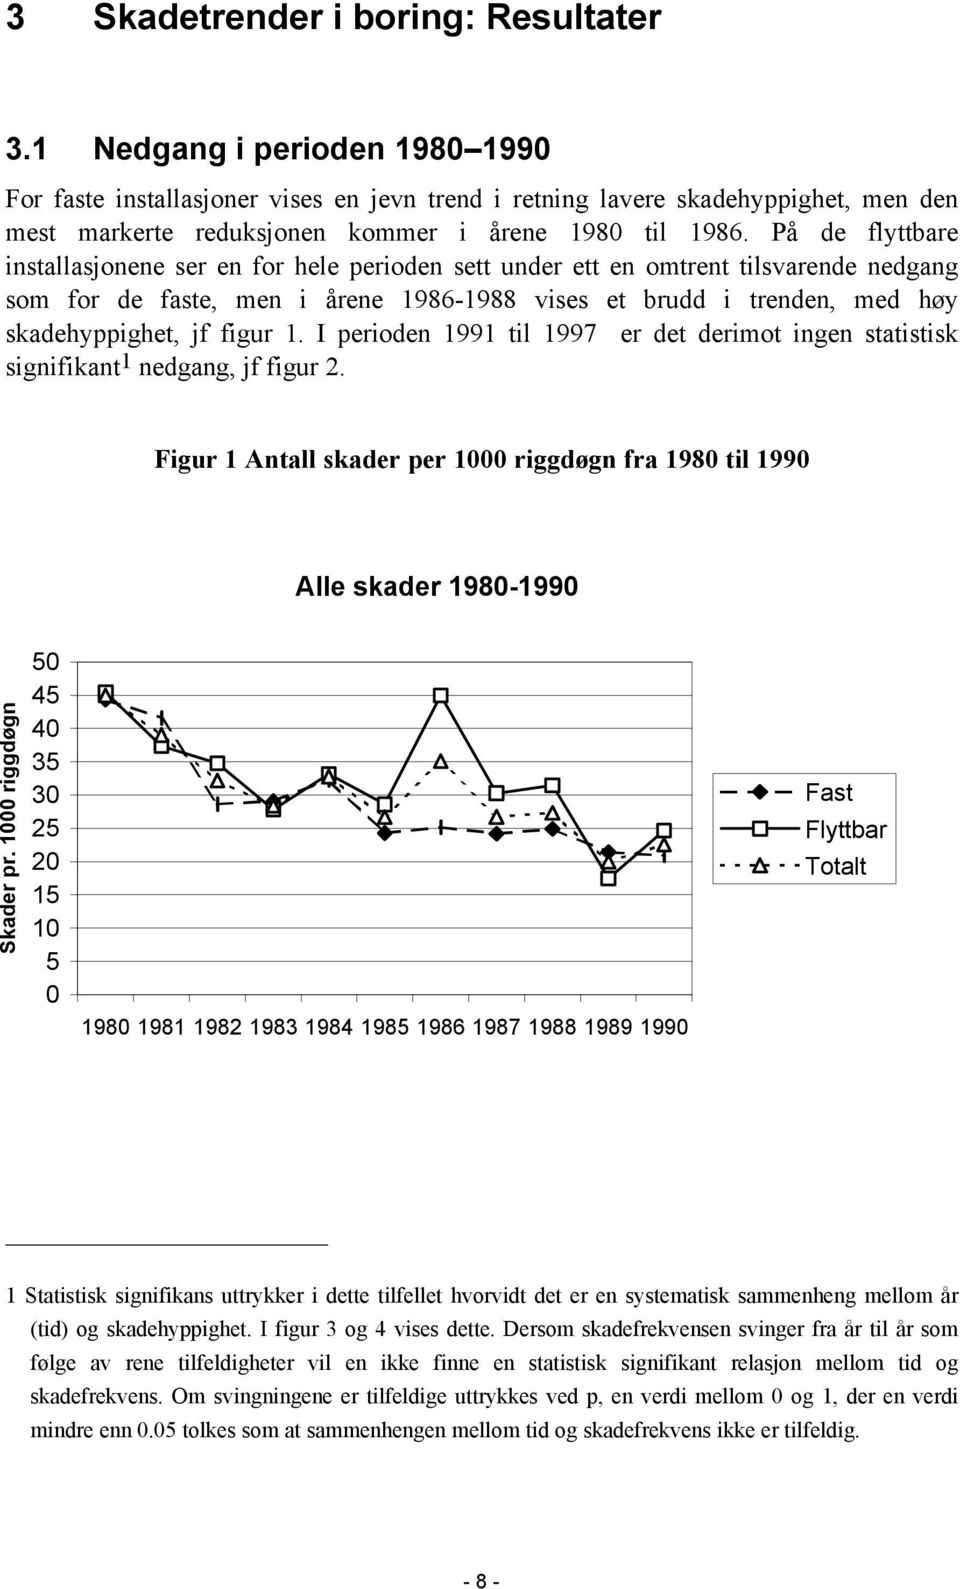 På de flyttbare installasjonene ser en for hele perioden sett under ett en omtrent tilsvarende nedgang som for de faste, men i årene 1986-1988 vises et brudd i trenden, med høy skadehyppighet, jf